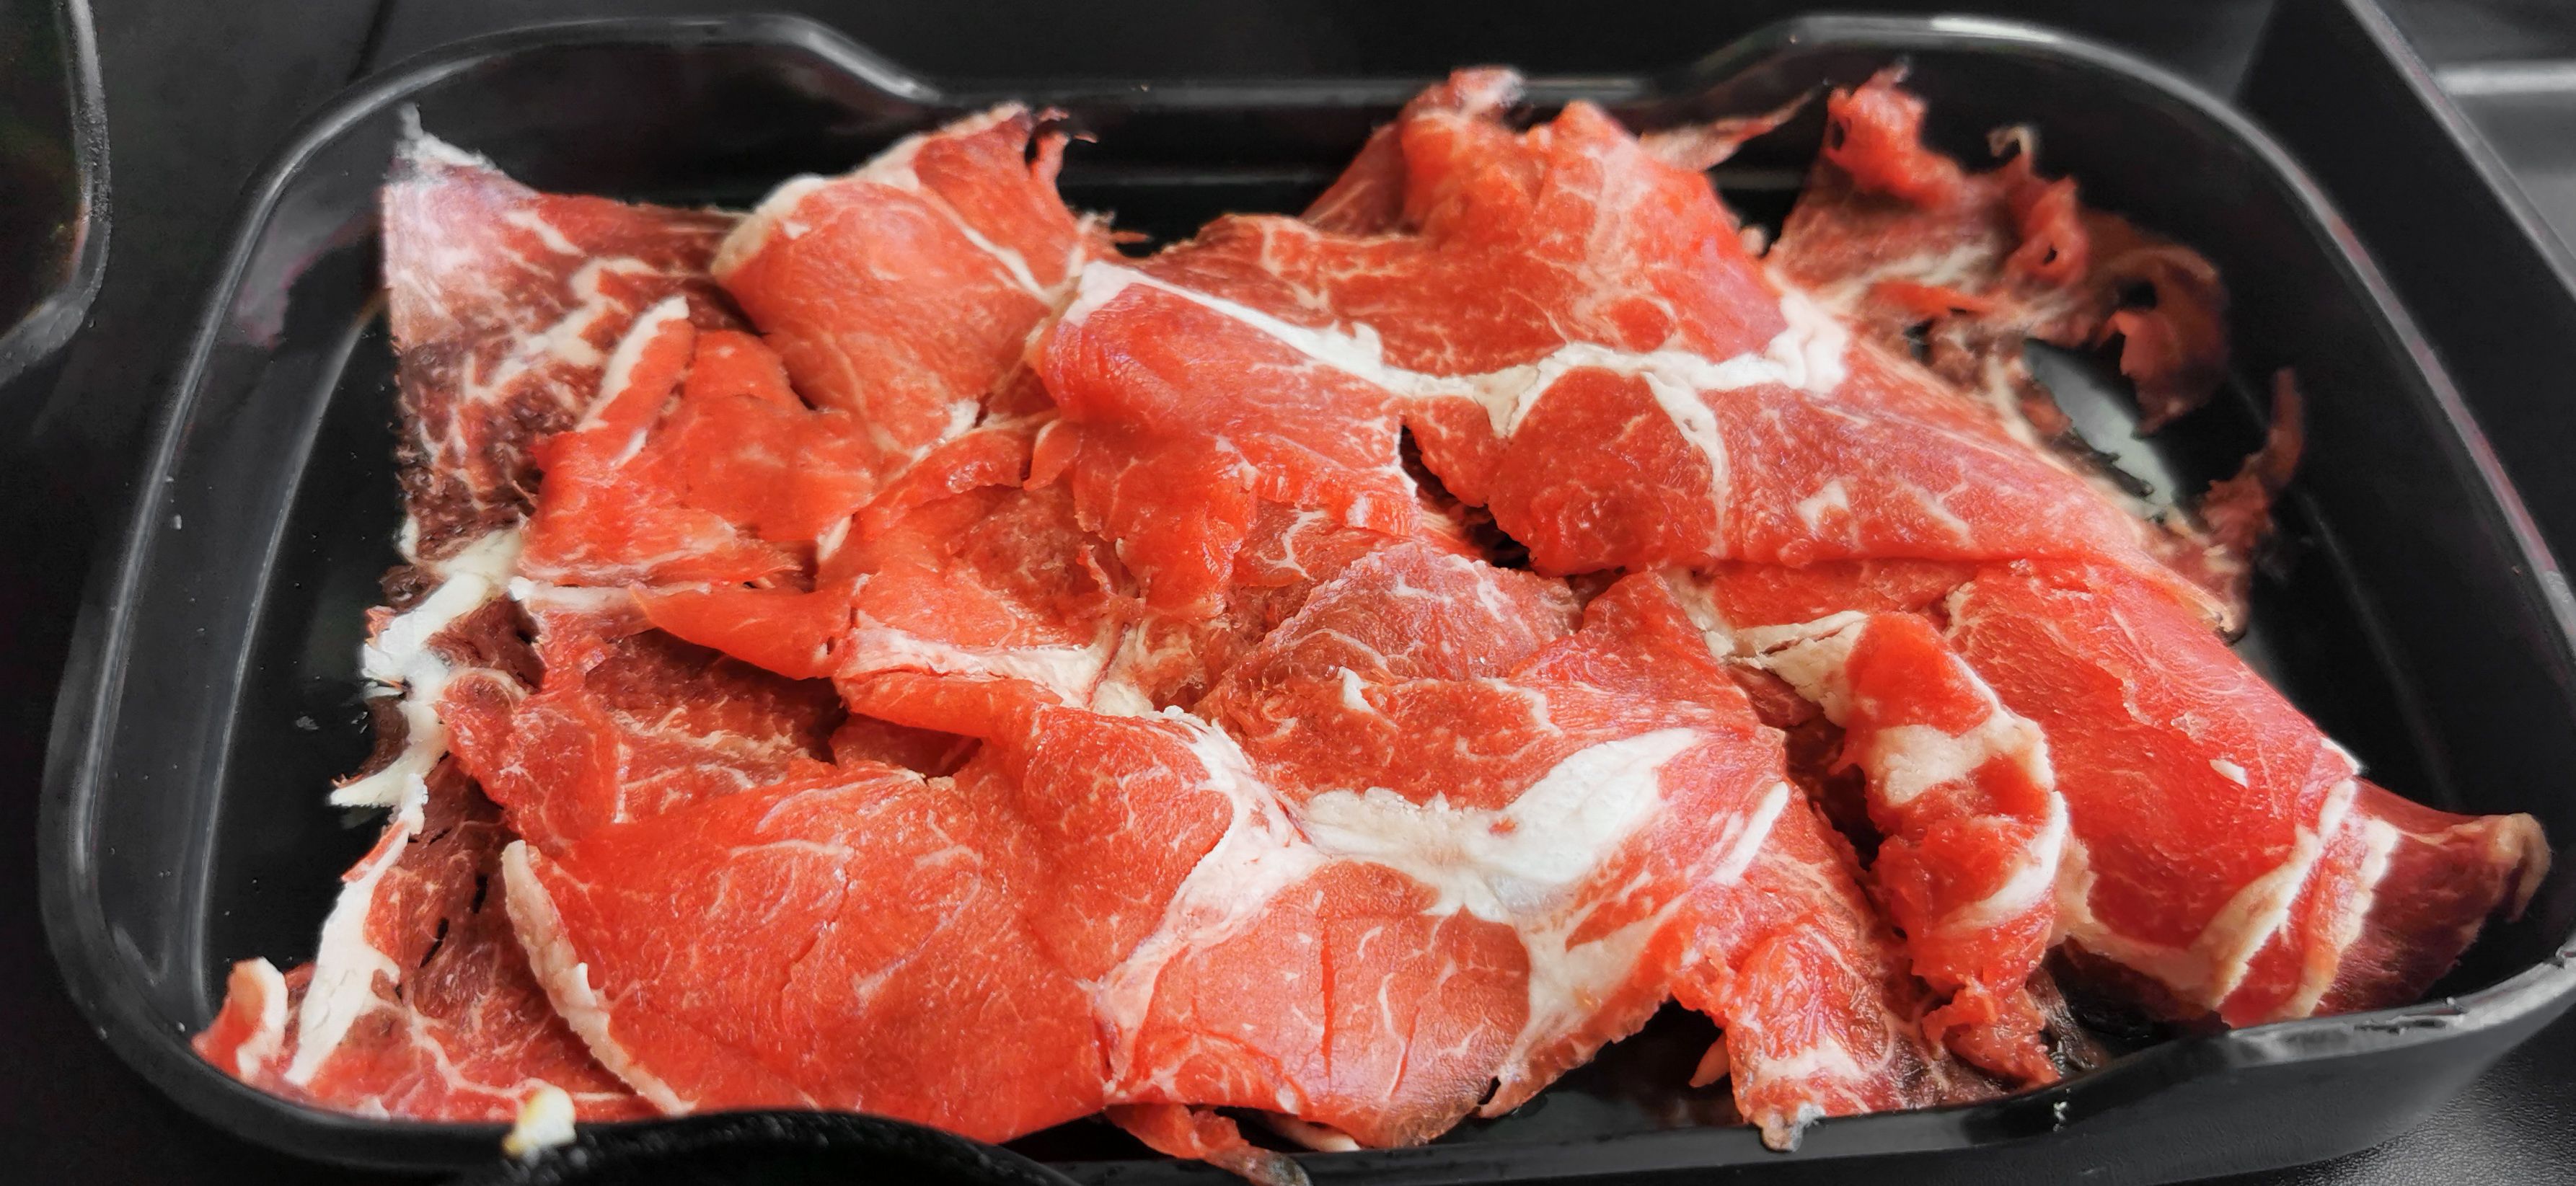 thinly sliced steak